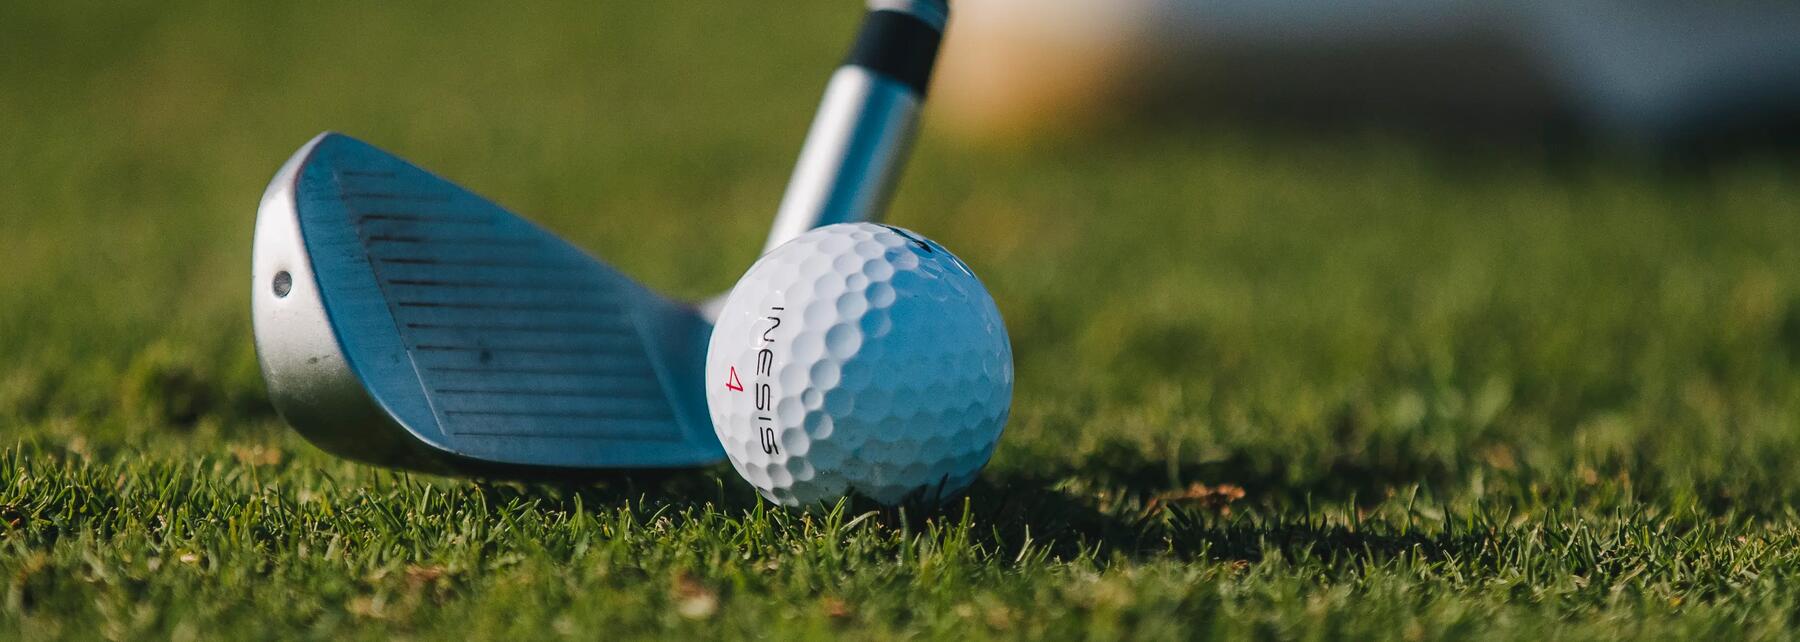 Inesis 500 Golfschläger im Test bei Professionals